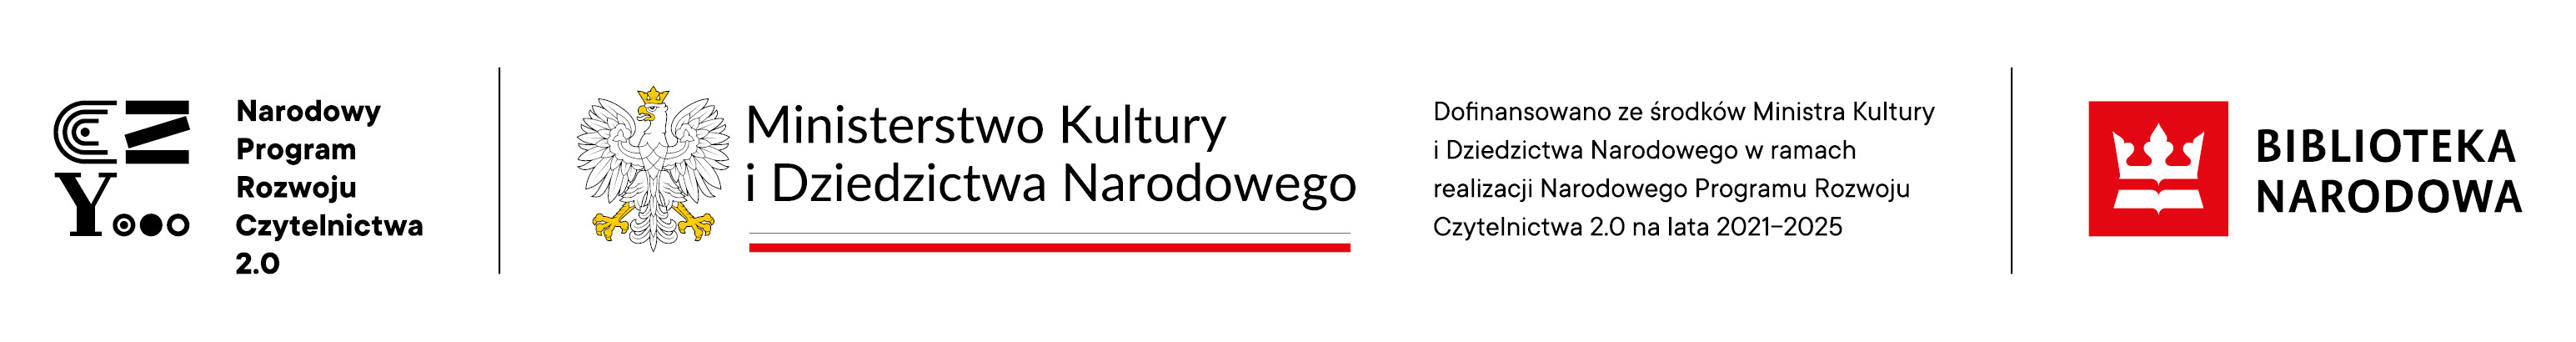 Logotyp Narodowego Programu Rozwoju Czytelnictwa 2.0 Ministerstwo Kultury i Dziedzictwa Narodowego